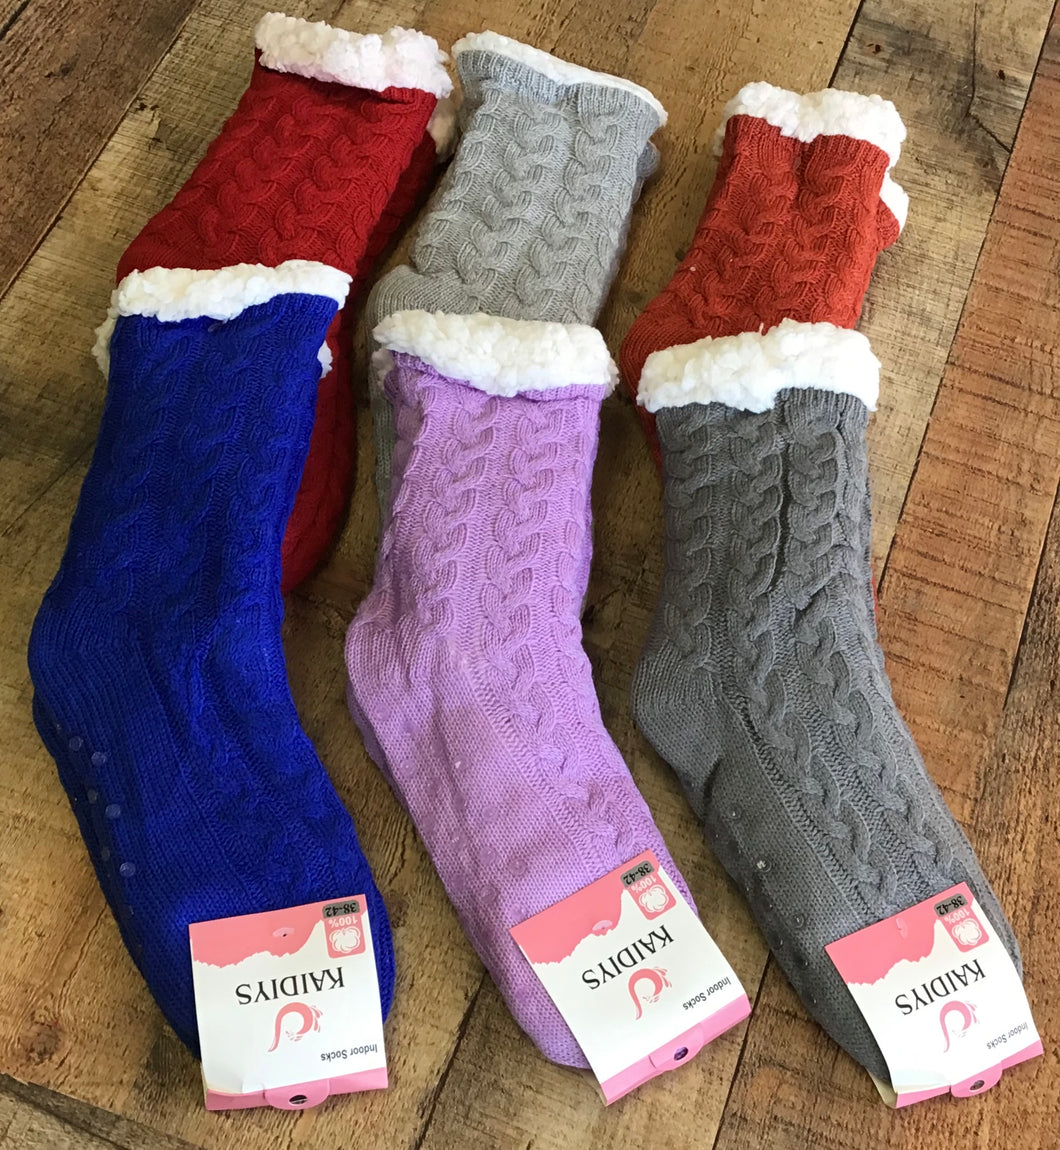 Winter Slipper Socks